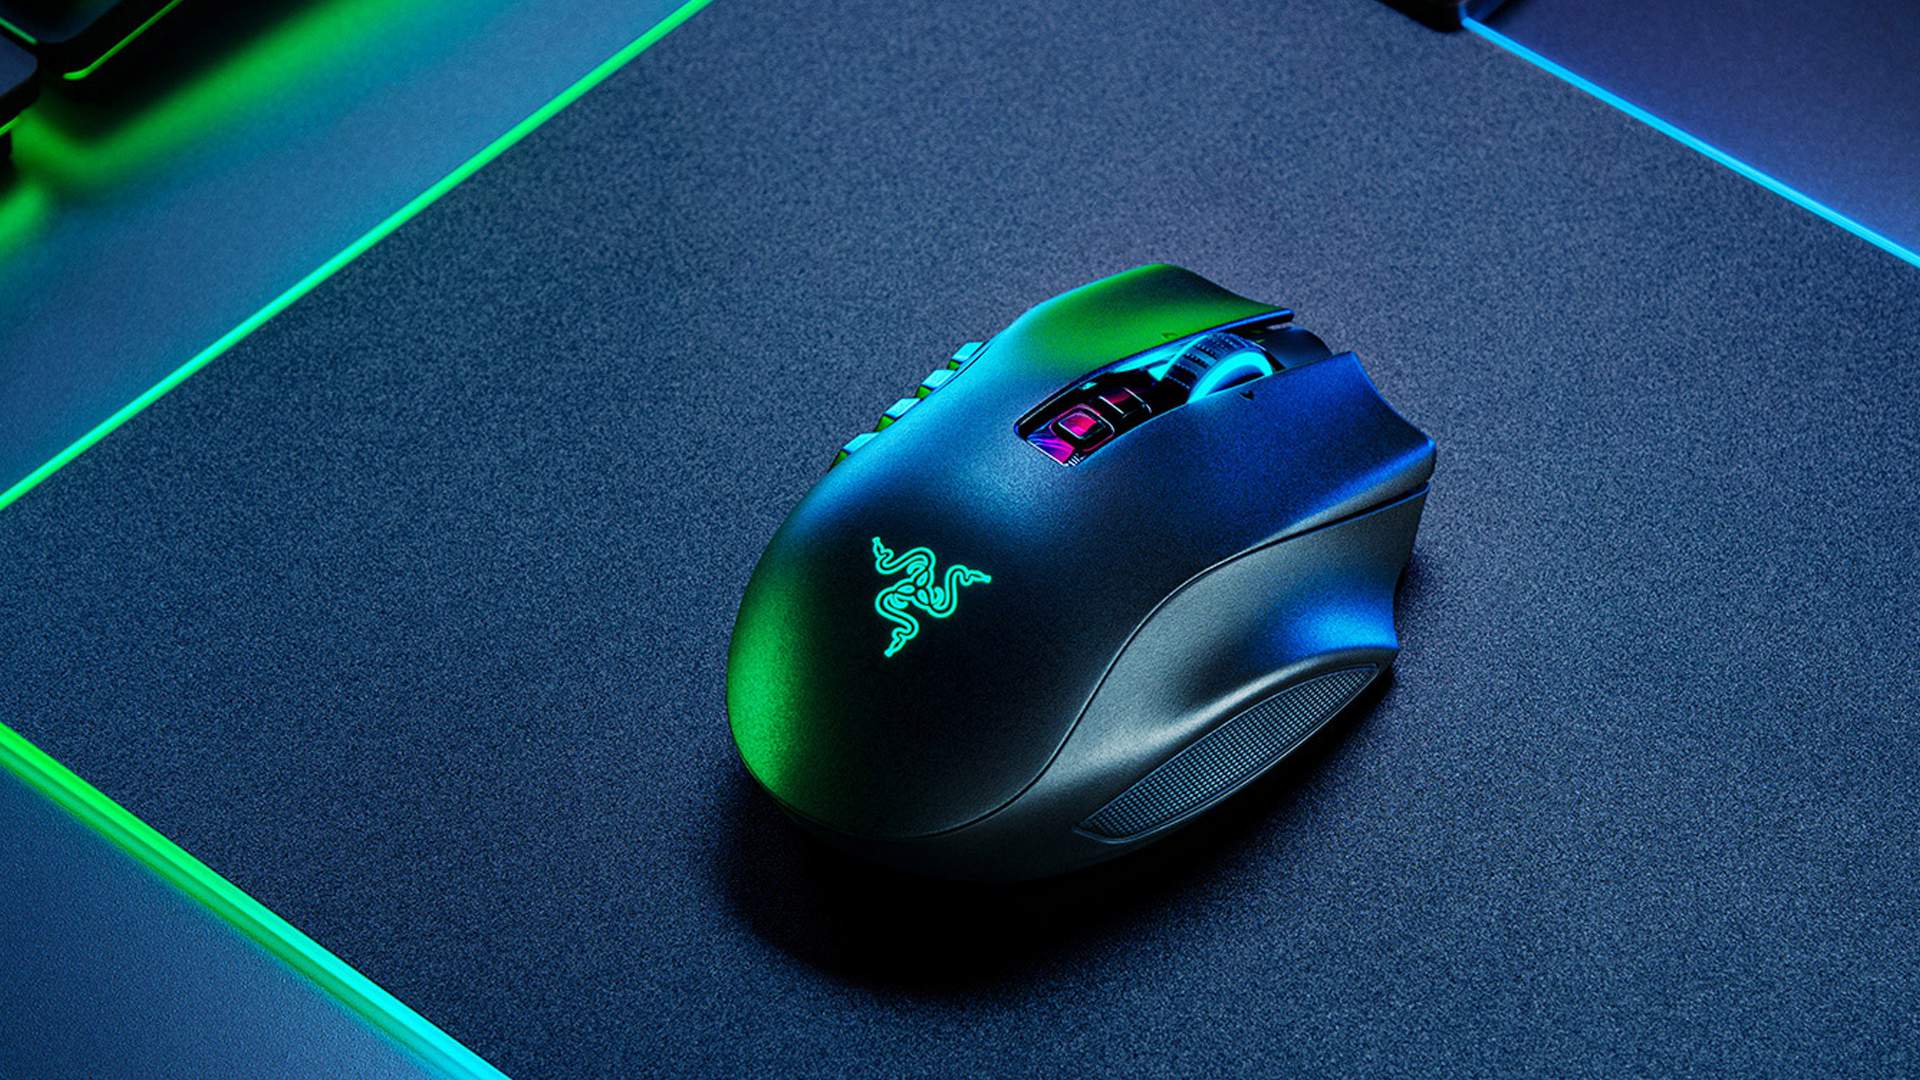 Razer anuncia Basilisk V3 Pro, seu mouse gamer sem fio mais